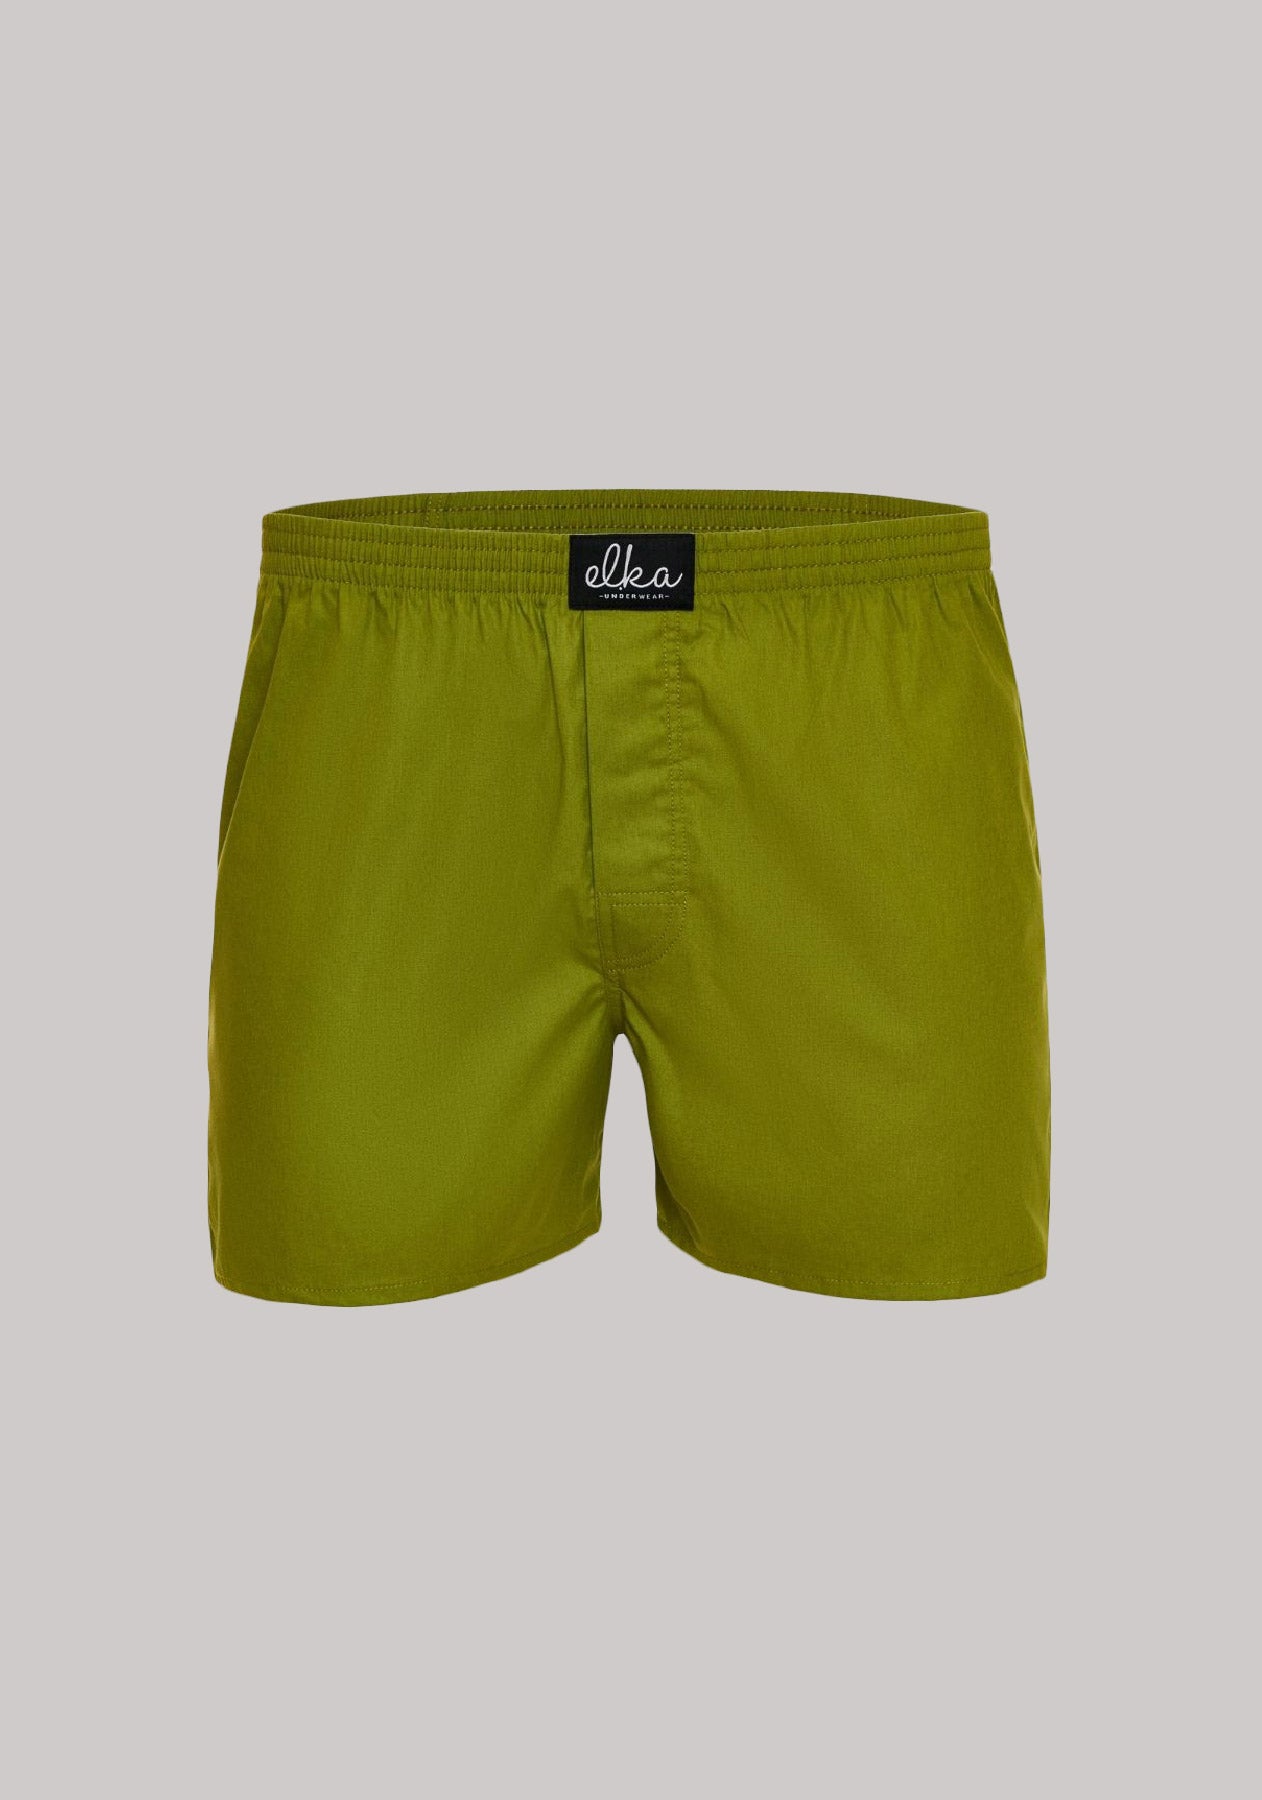 Men's shorts Olive